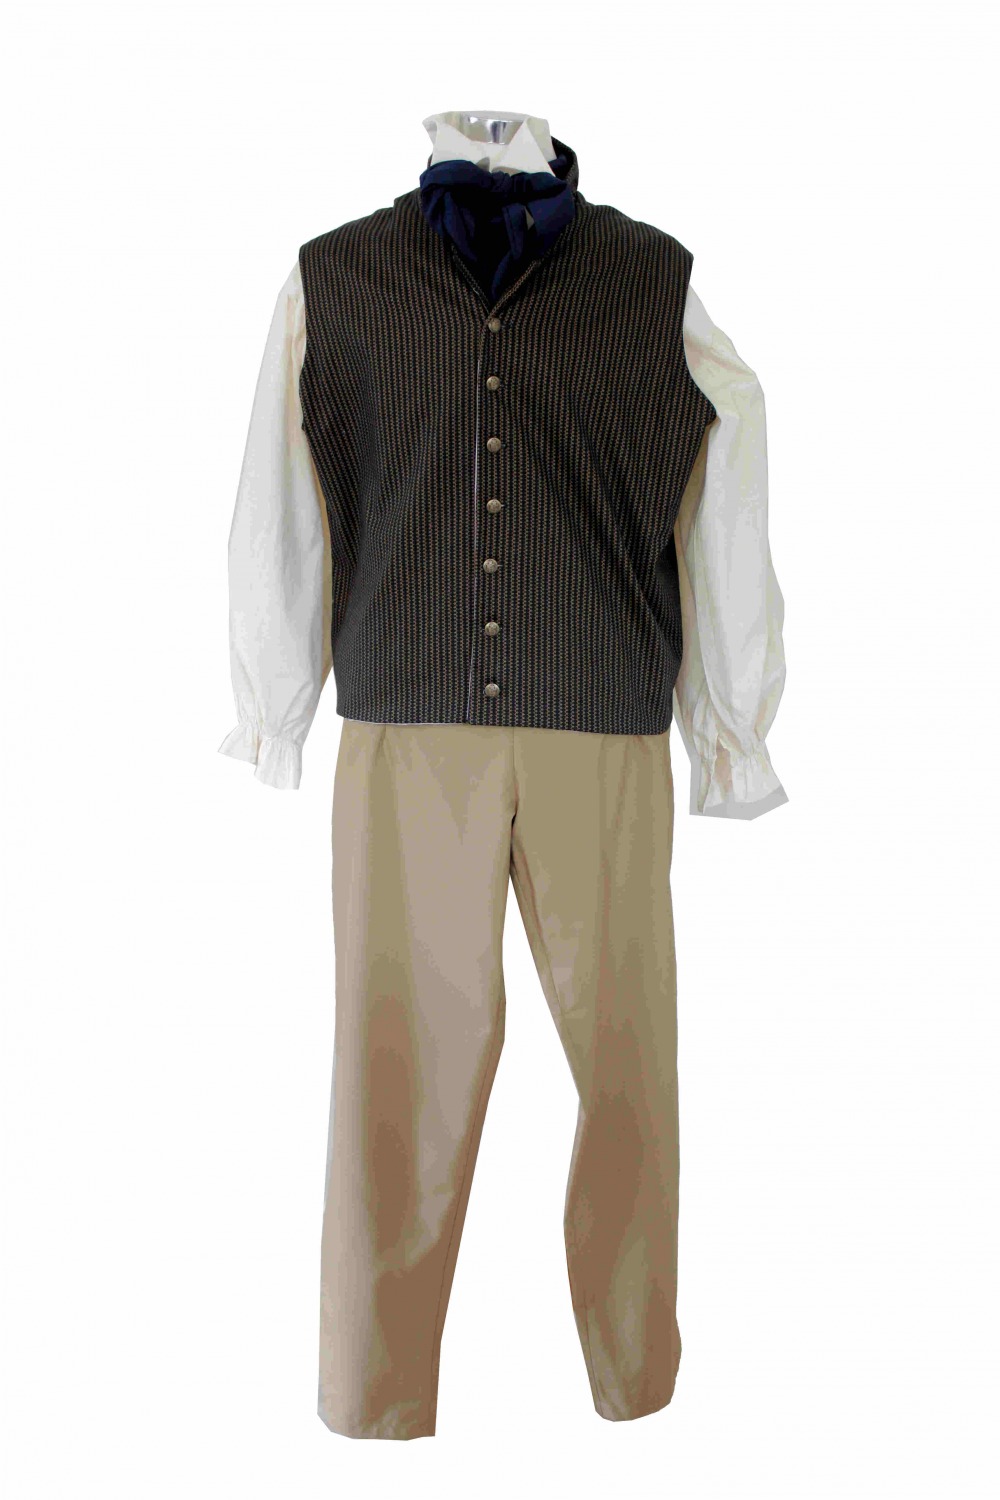 Deluxe Men's Regency Mr. Darcy Victorian Costume Size XL XXL Image